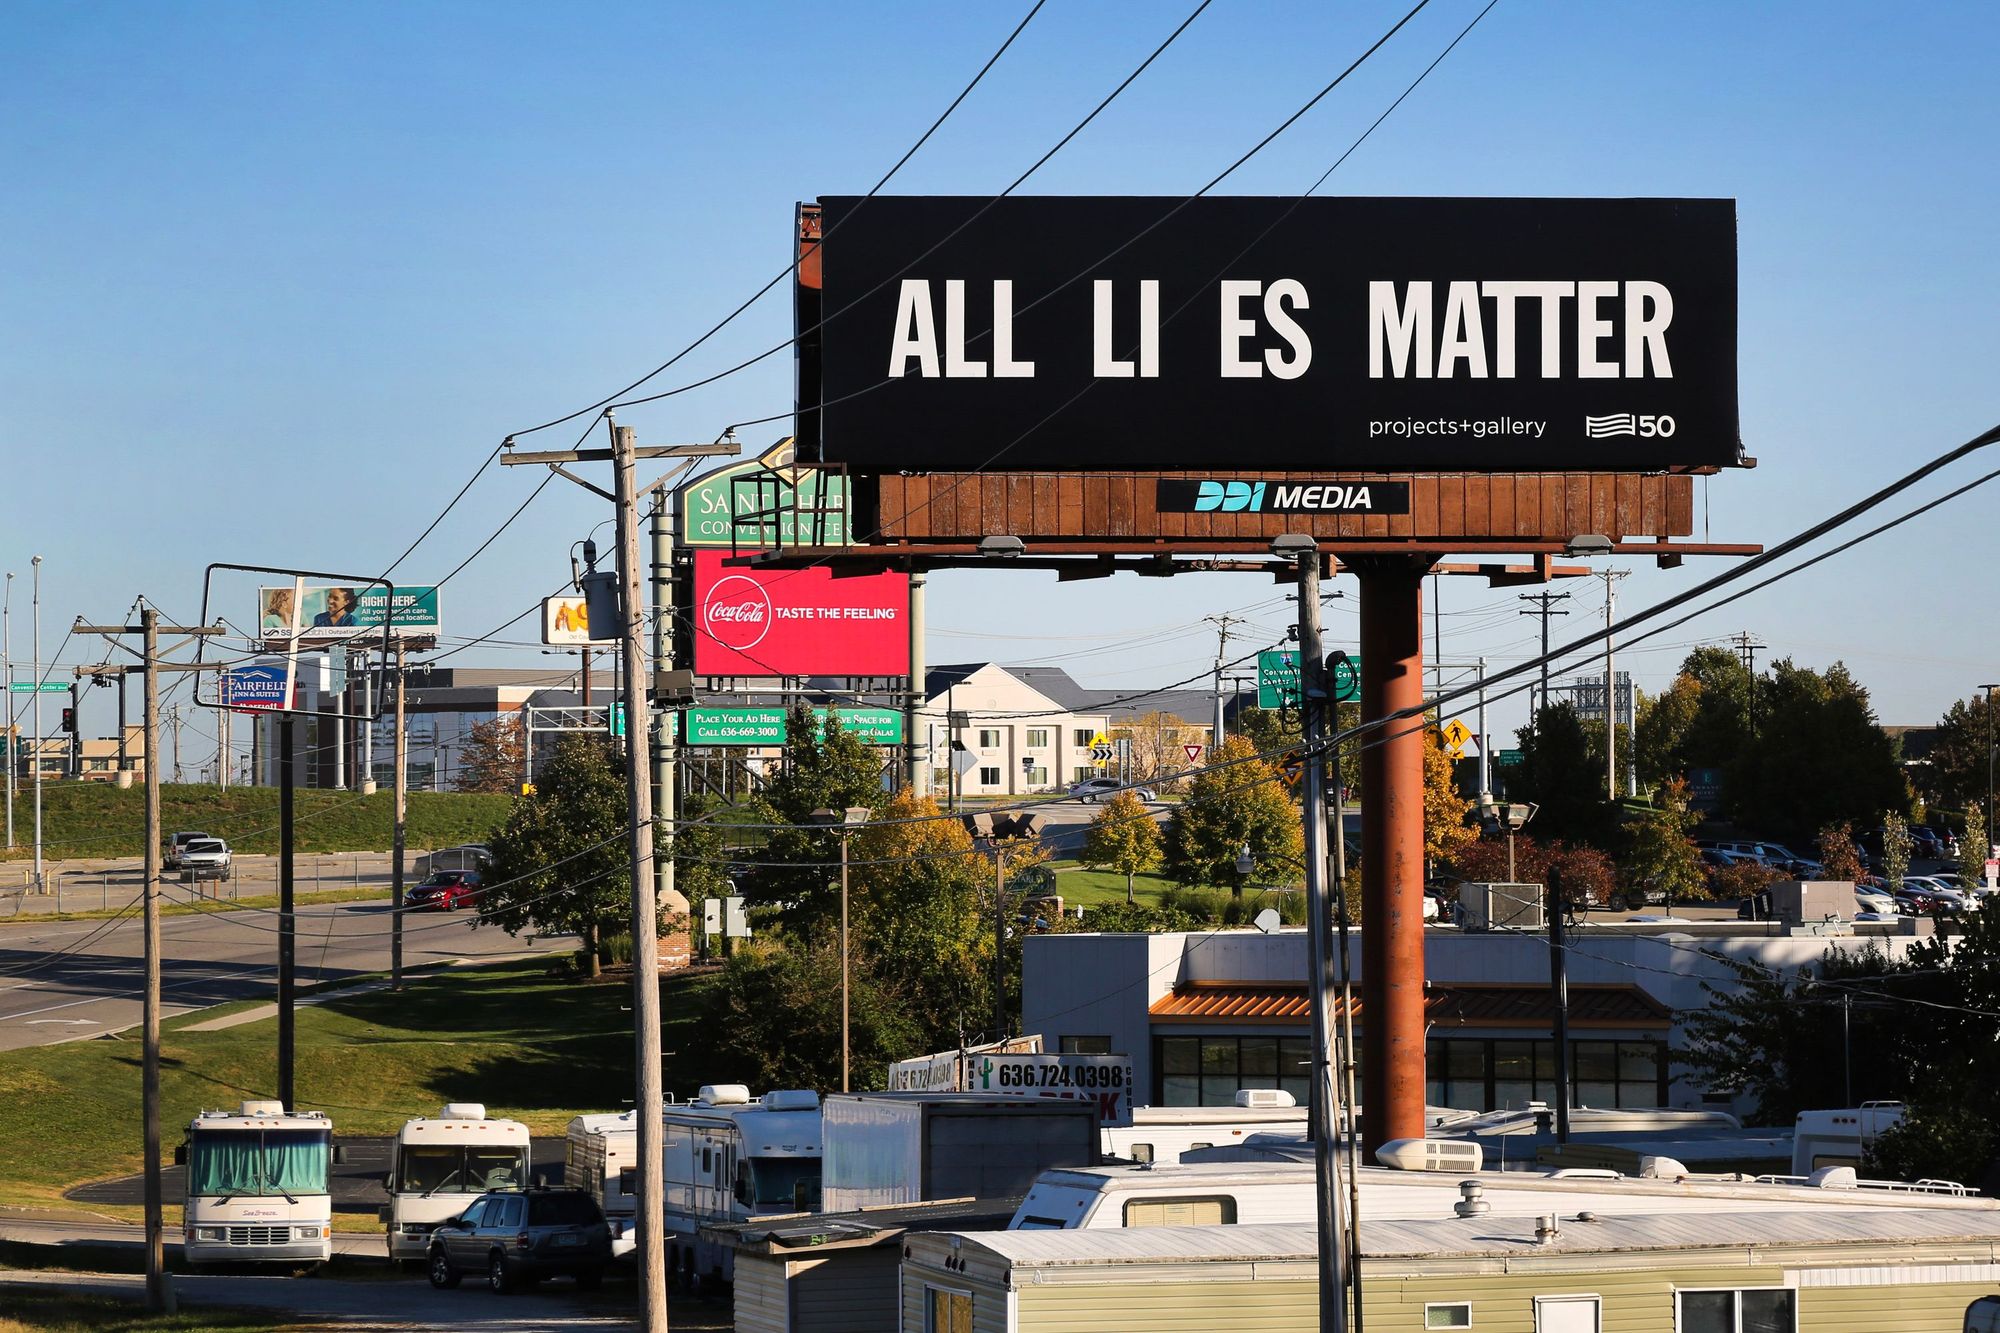 Black billboard with the text "All Li es Matter"